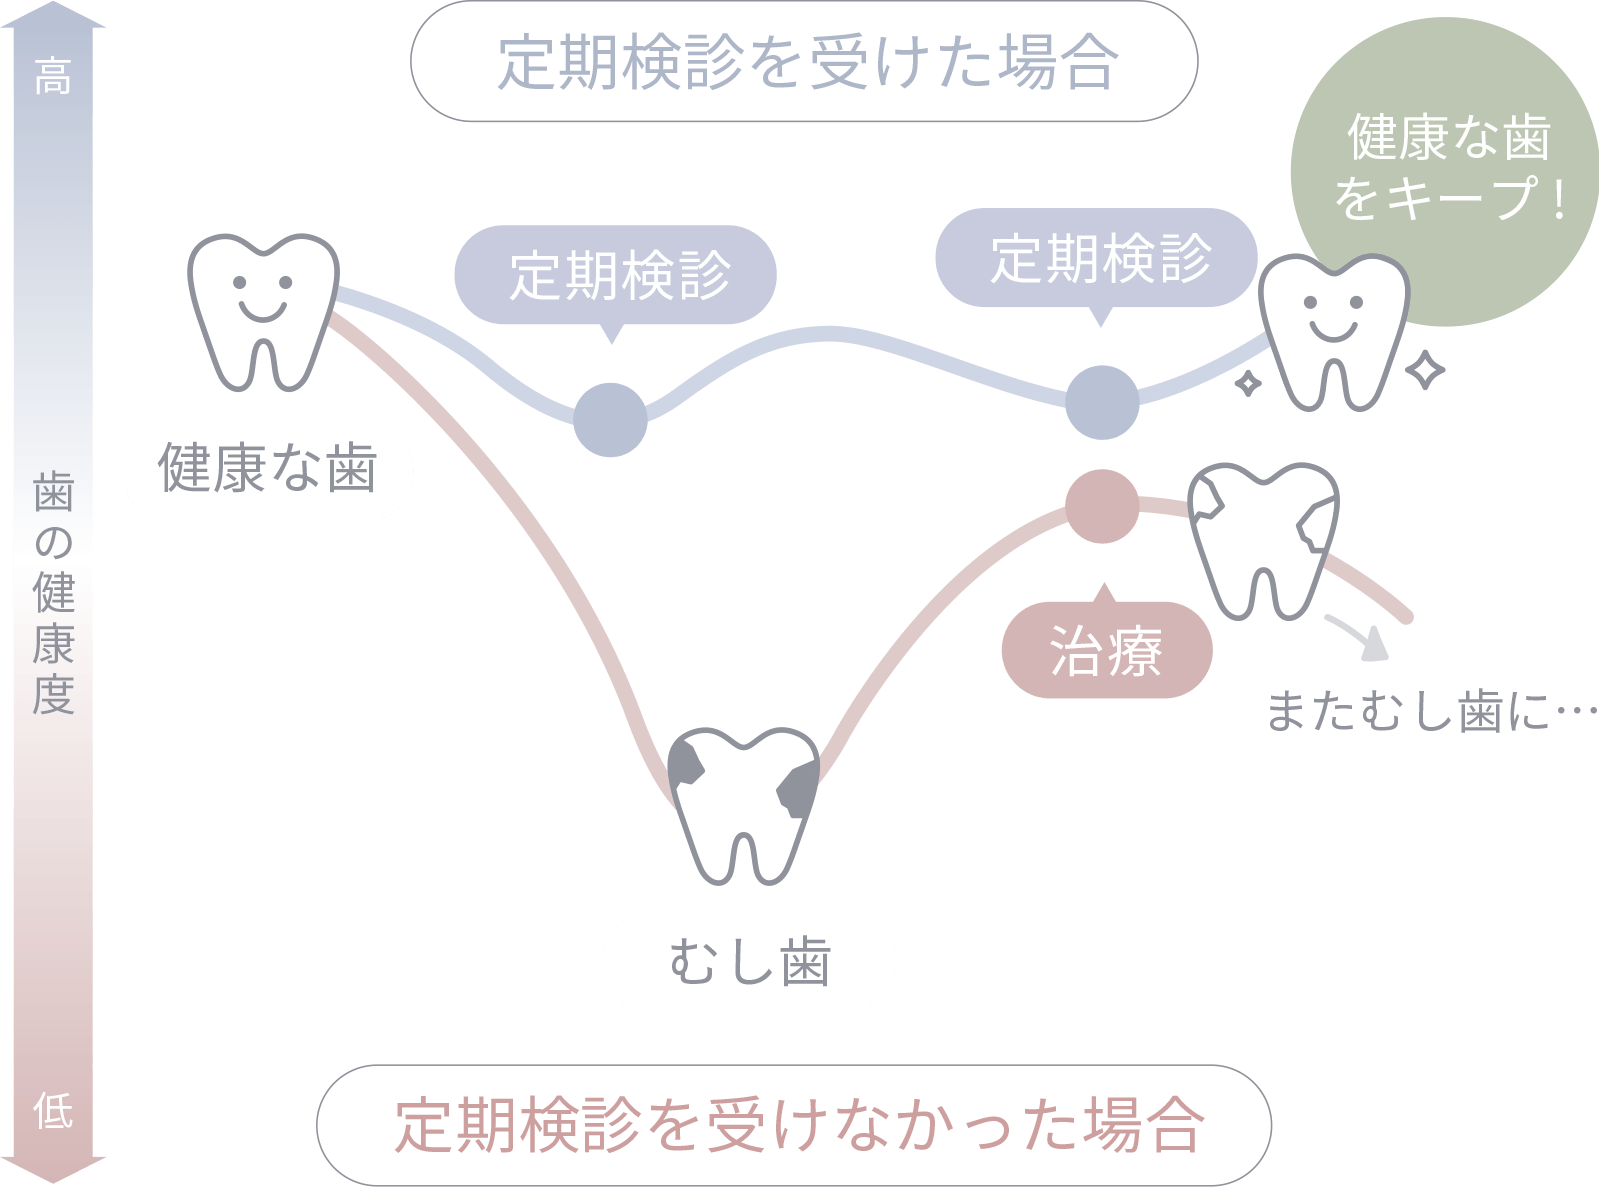 歯科での定期検診が 歯の寿命を伸ばす